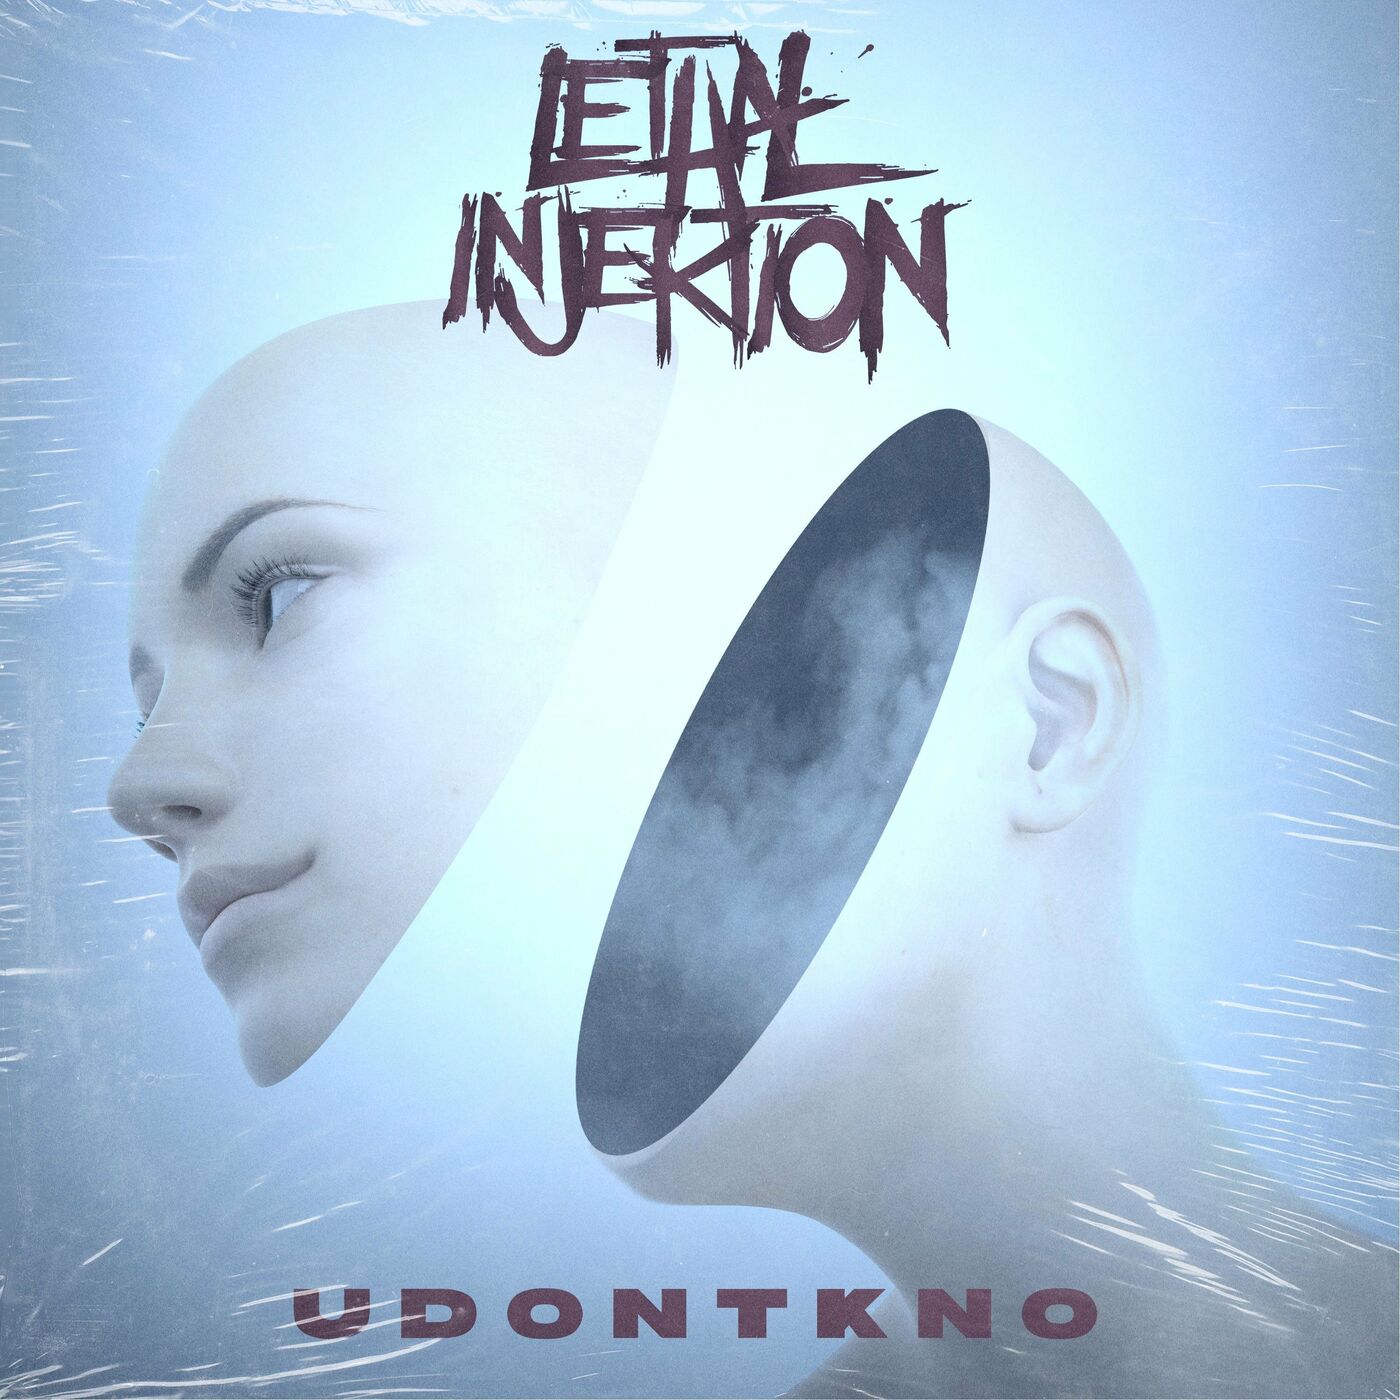 Lethal Injektion Udontkno [single] 2020 Core Radio